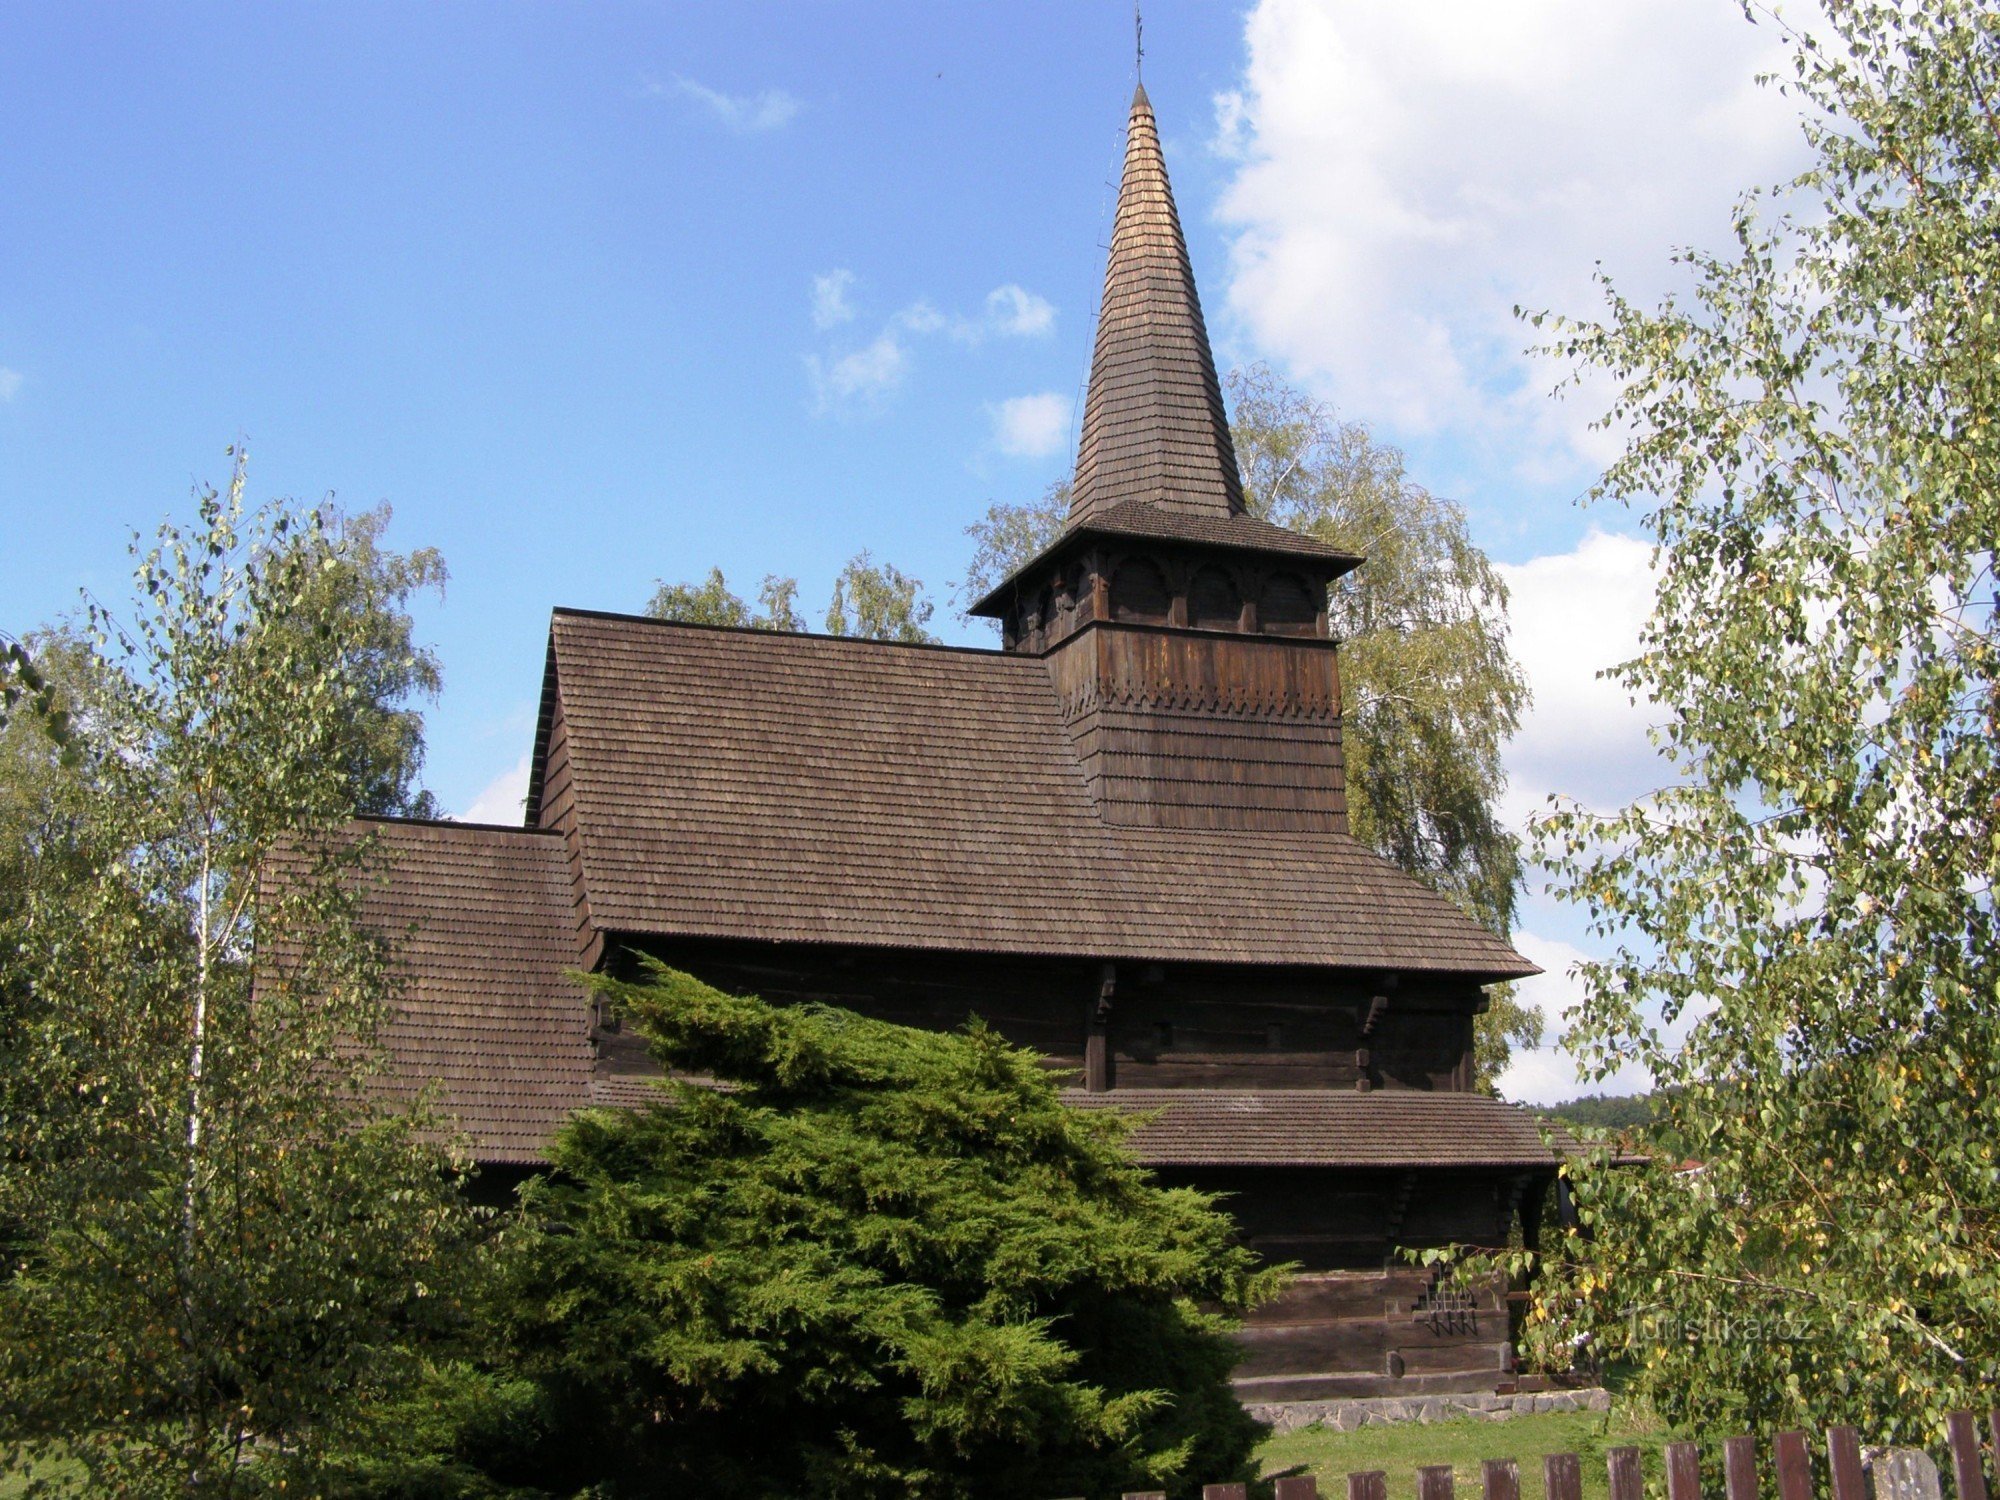 Dobříkov - iglesia de madera de Todos los Santos